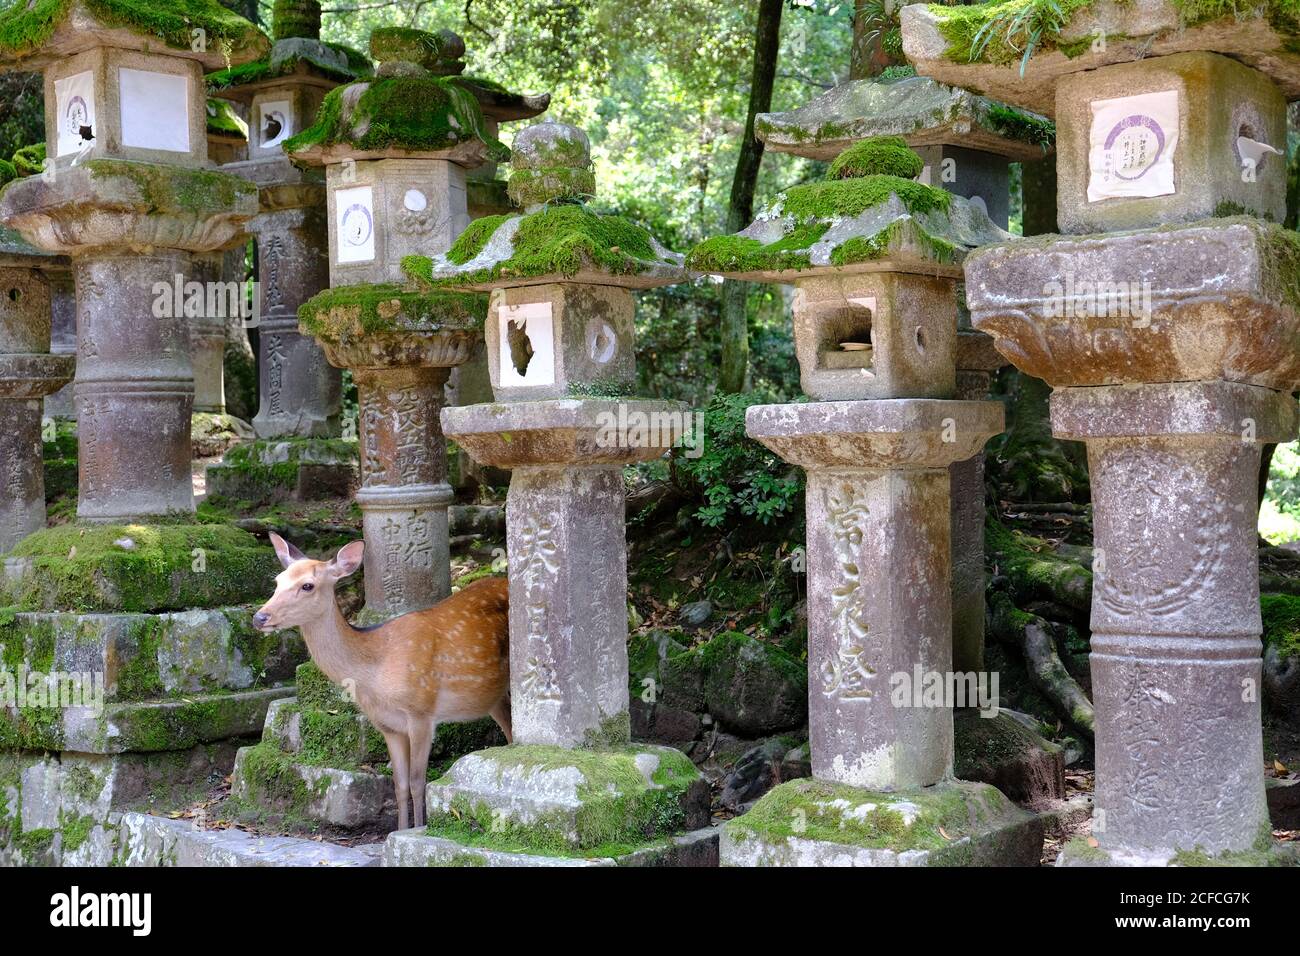 Nara Japan - Nara Park ancient stone lanterns and a red deer Stock Photo